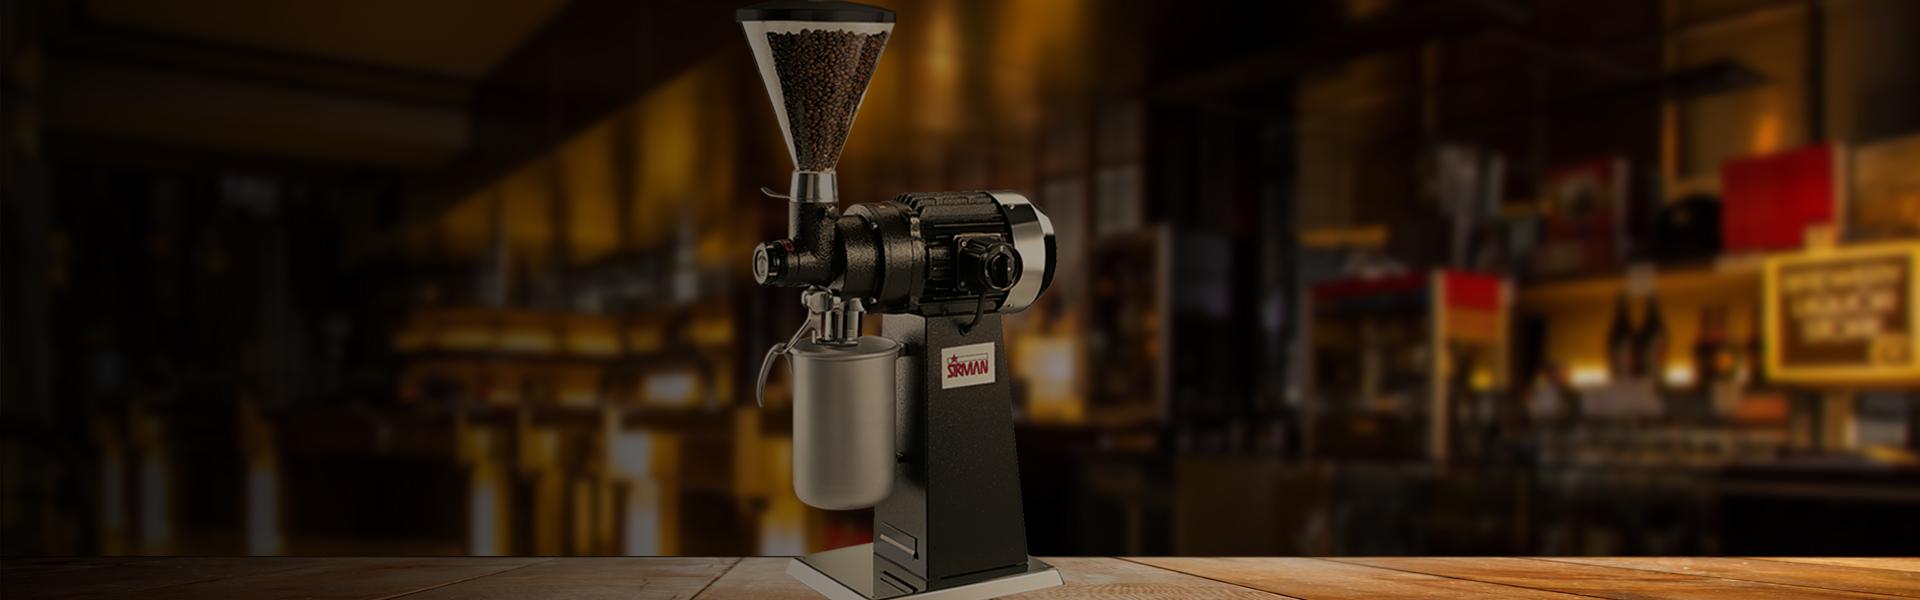 Coffee grinders - Sirman